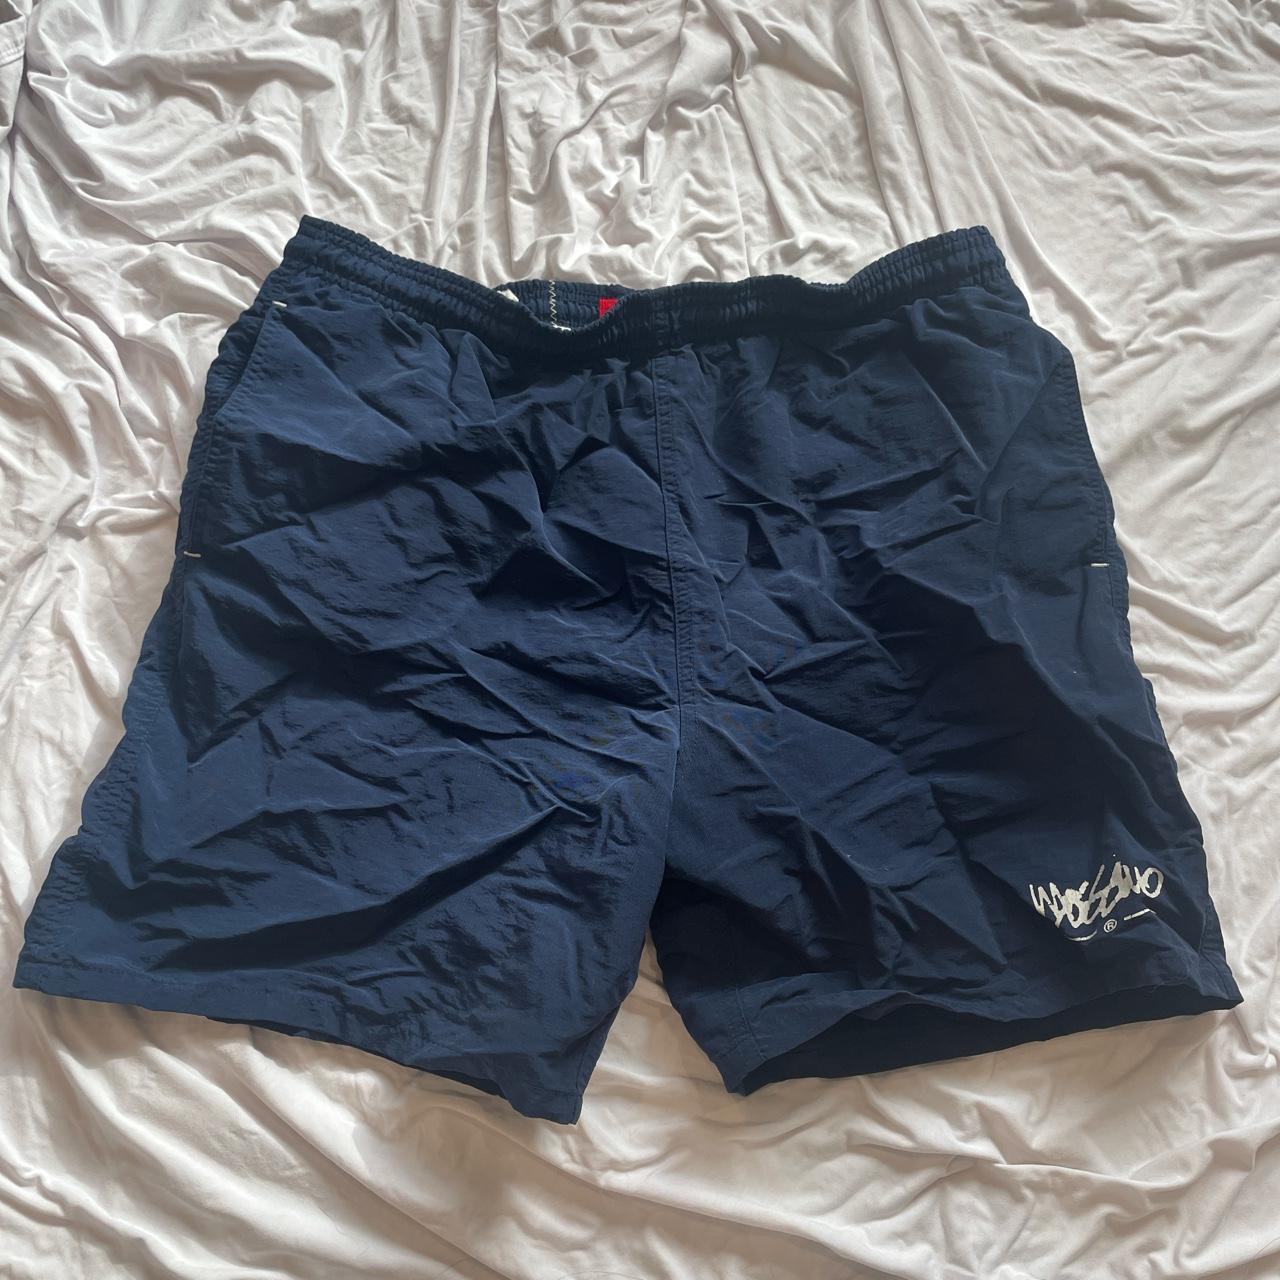 Mossimo Men's Navy Shorts